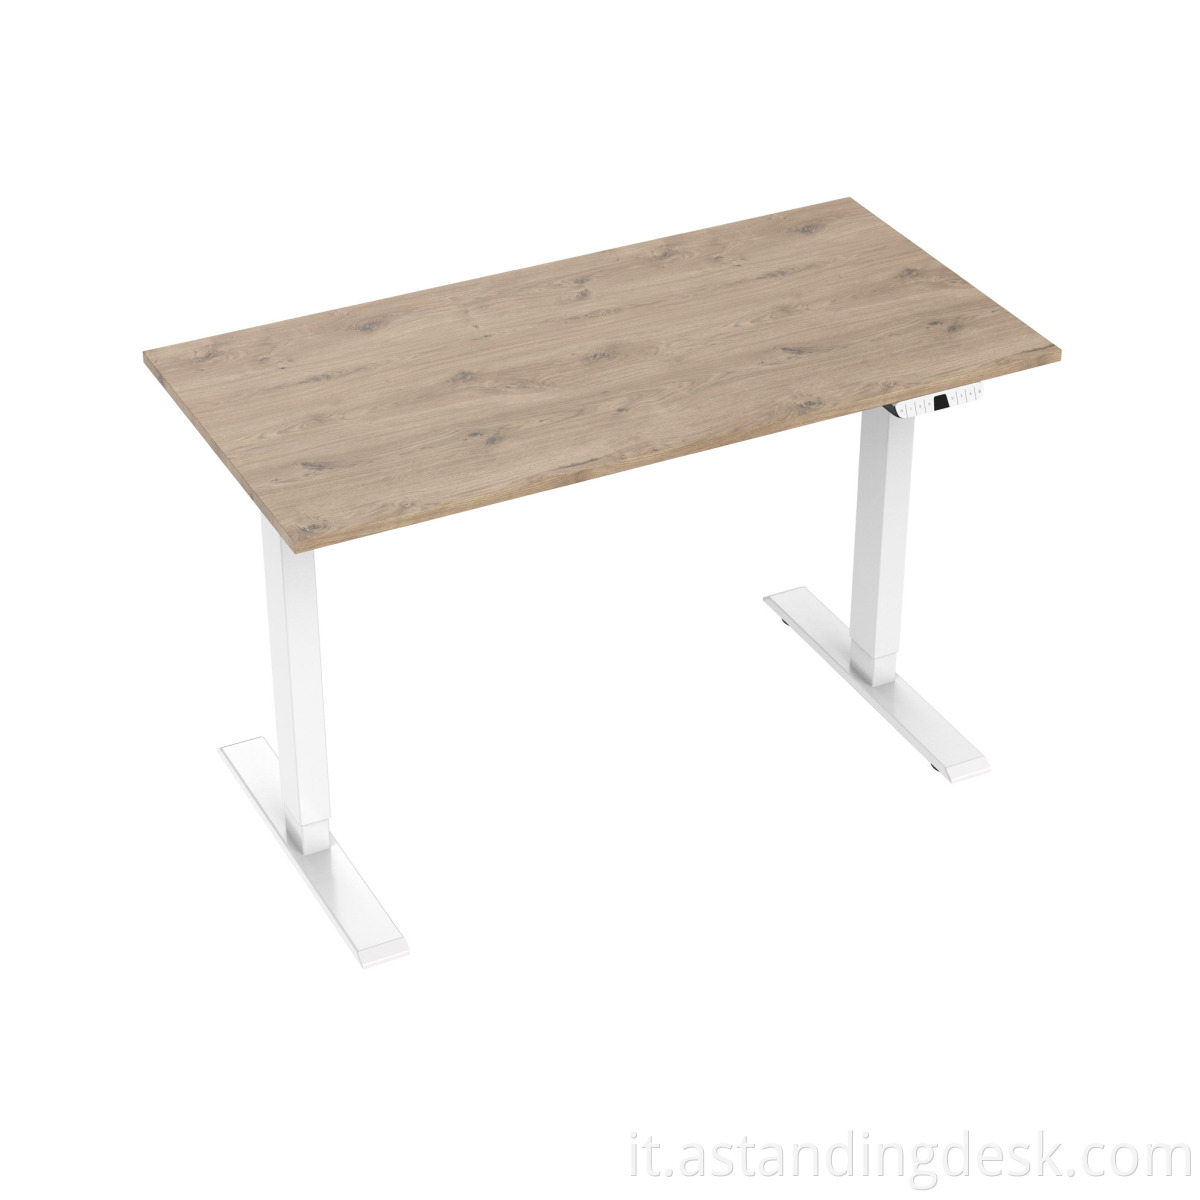 Tabella di altezza regolabile in piedi tavolo di sollevamento del tavolo altezza scrivania regolabile scrivania ergonomica